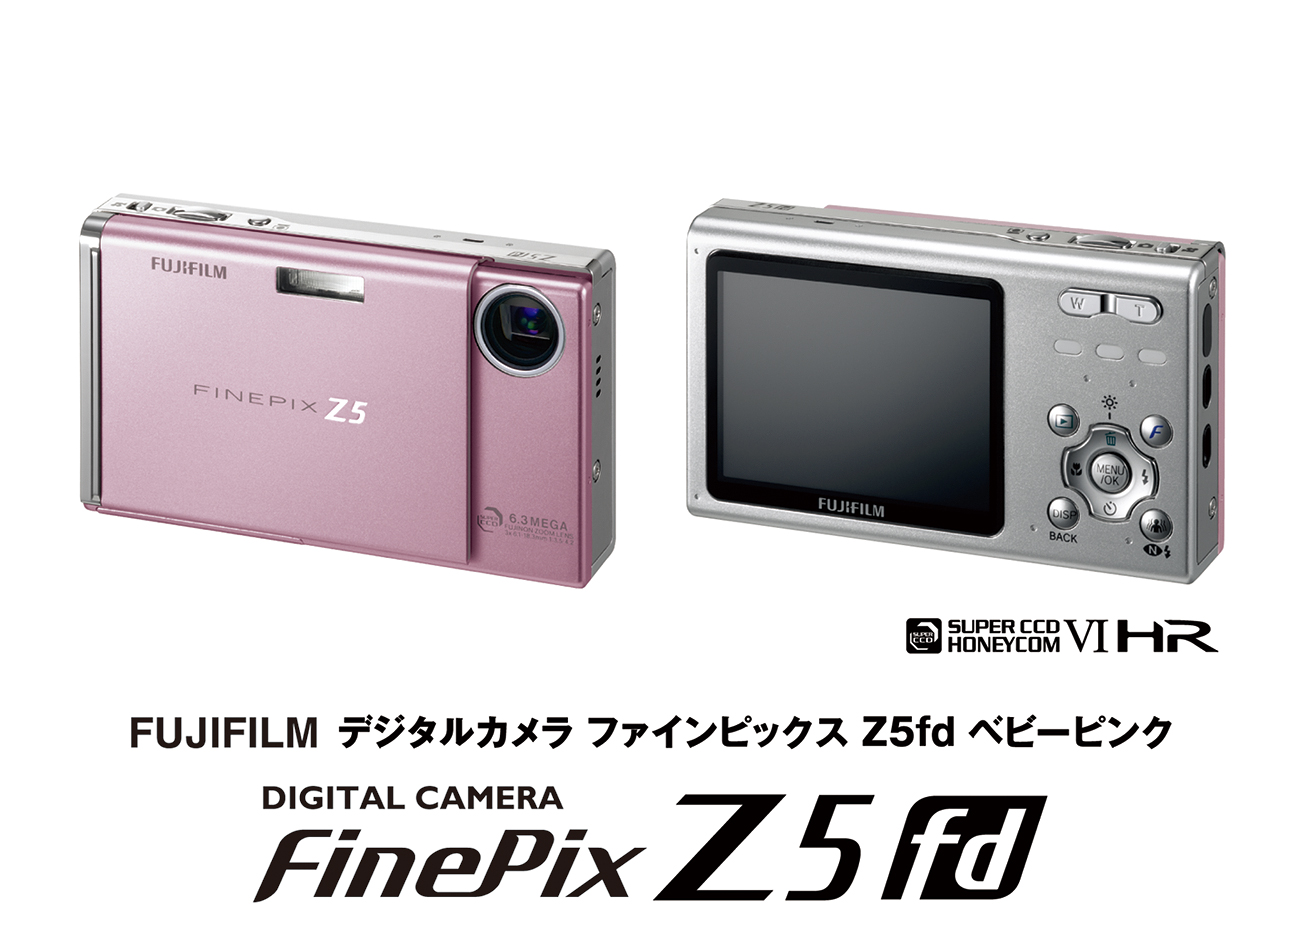 誠実】 FUJIFILM FinePix Z5fd デジタルカメラ